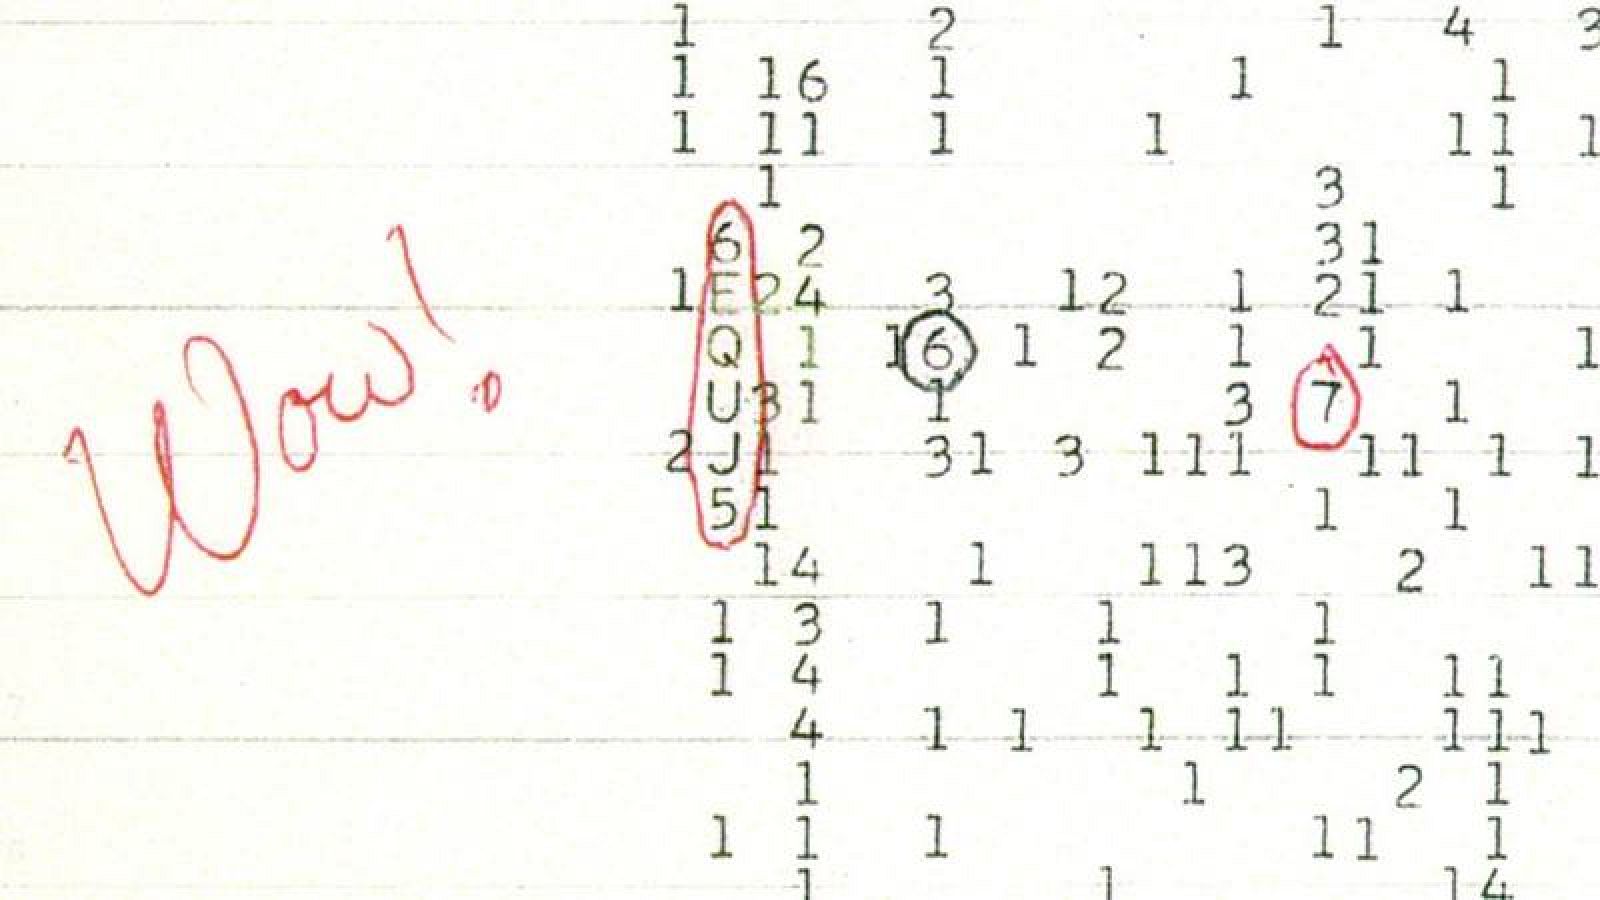 Debido a la sorpresa que le produjo, el astrónomo que descubrió la señal anotó la palabra 'Wow!' en una hoja de papel y dio el nombre al fenómeno.